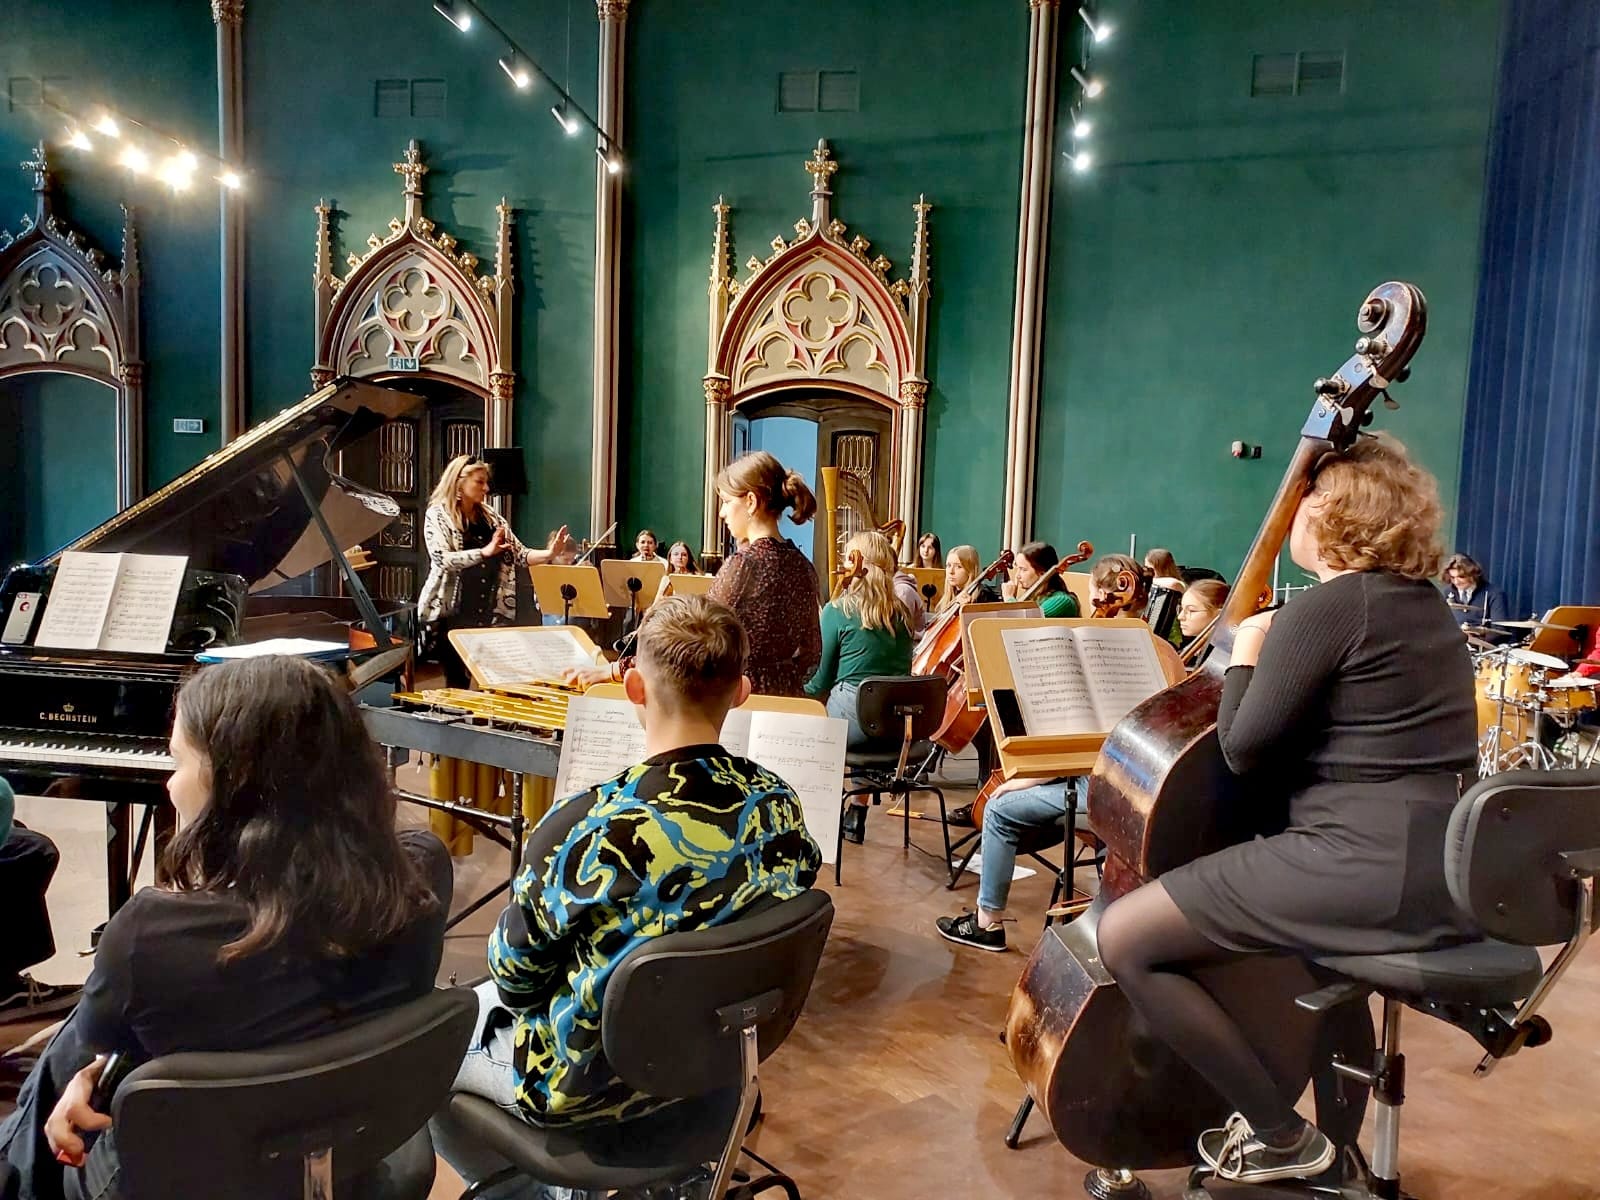 Zdjęcie orkiestry symfonicznej, młodzieżowej. Z prawej strony na pierwszym planie dziewczyna z kontrabasem siedząca na krześle, z lewej otwarty fortepian z rozłożonymi nutami na pulpicie. Za fortepianem pani dyrygent, przed nią dziewczyna grająca na wibrafonie. W oddali wiolonczele skrzypce i harfa. Wszystko to dzieje się w sali koncertowej OSM w Bytomiu, ściany w kolorze zielonym(butelkowym) z pięknie zdobionymi odrzwiami.